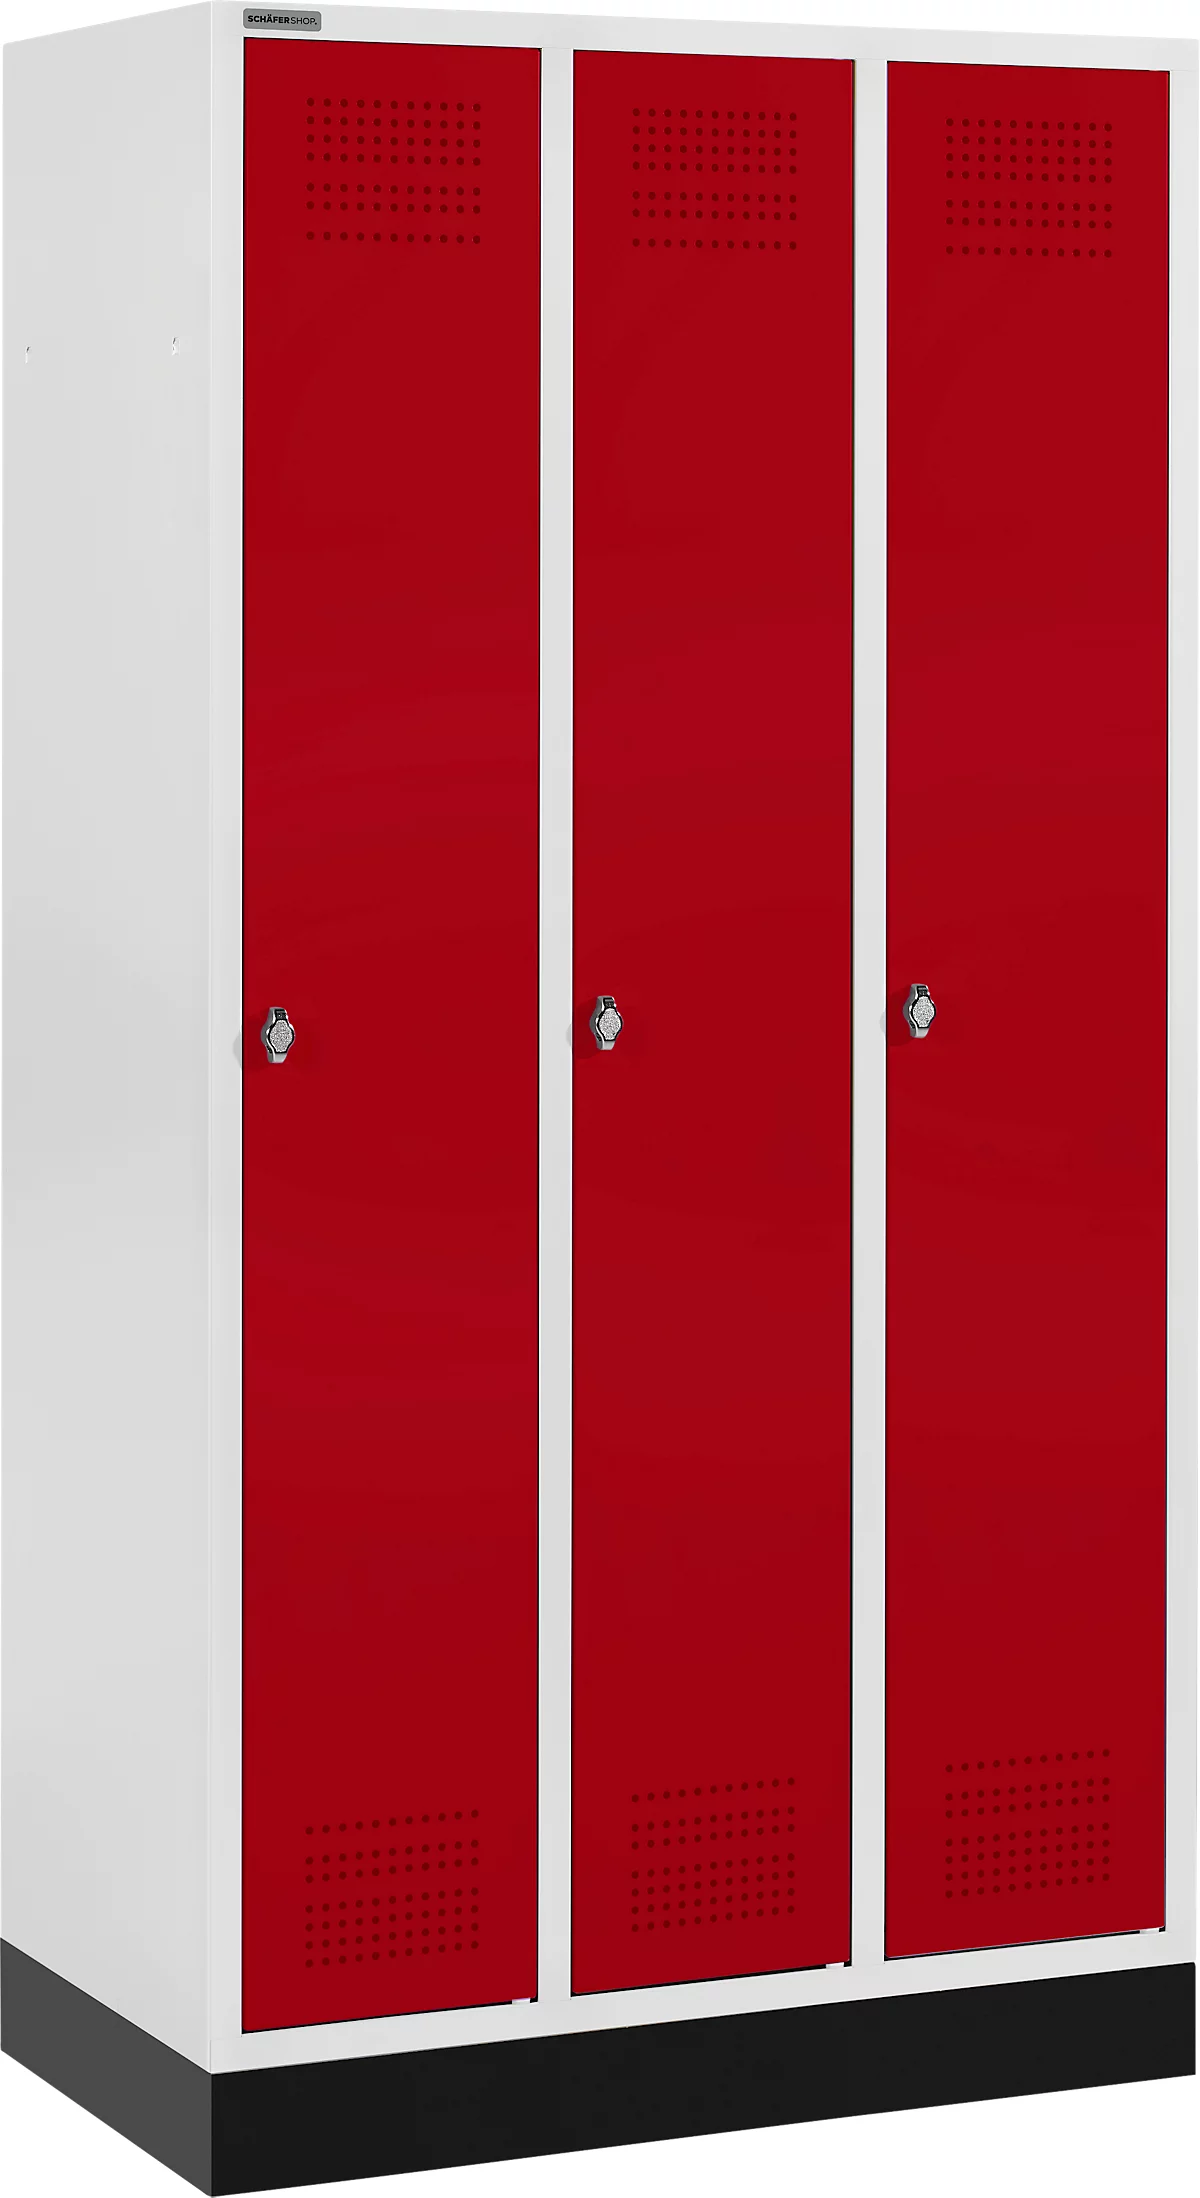 Schäfer Shop Genius Taquilla con zócalo, 3 compartimentos, cierre de pasador giratorio de seguridad, gris luminoso/rojo